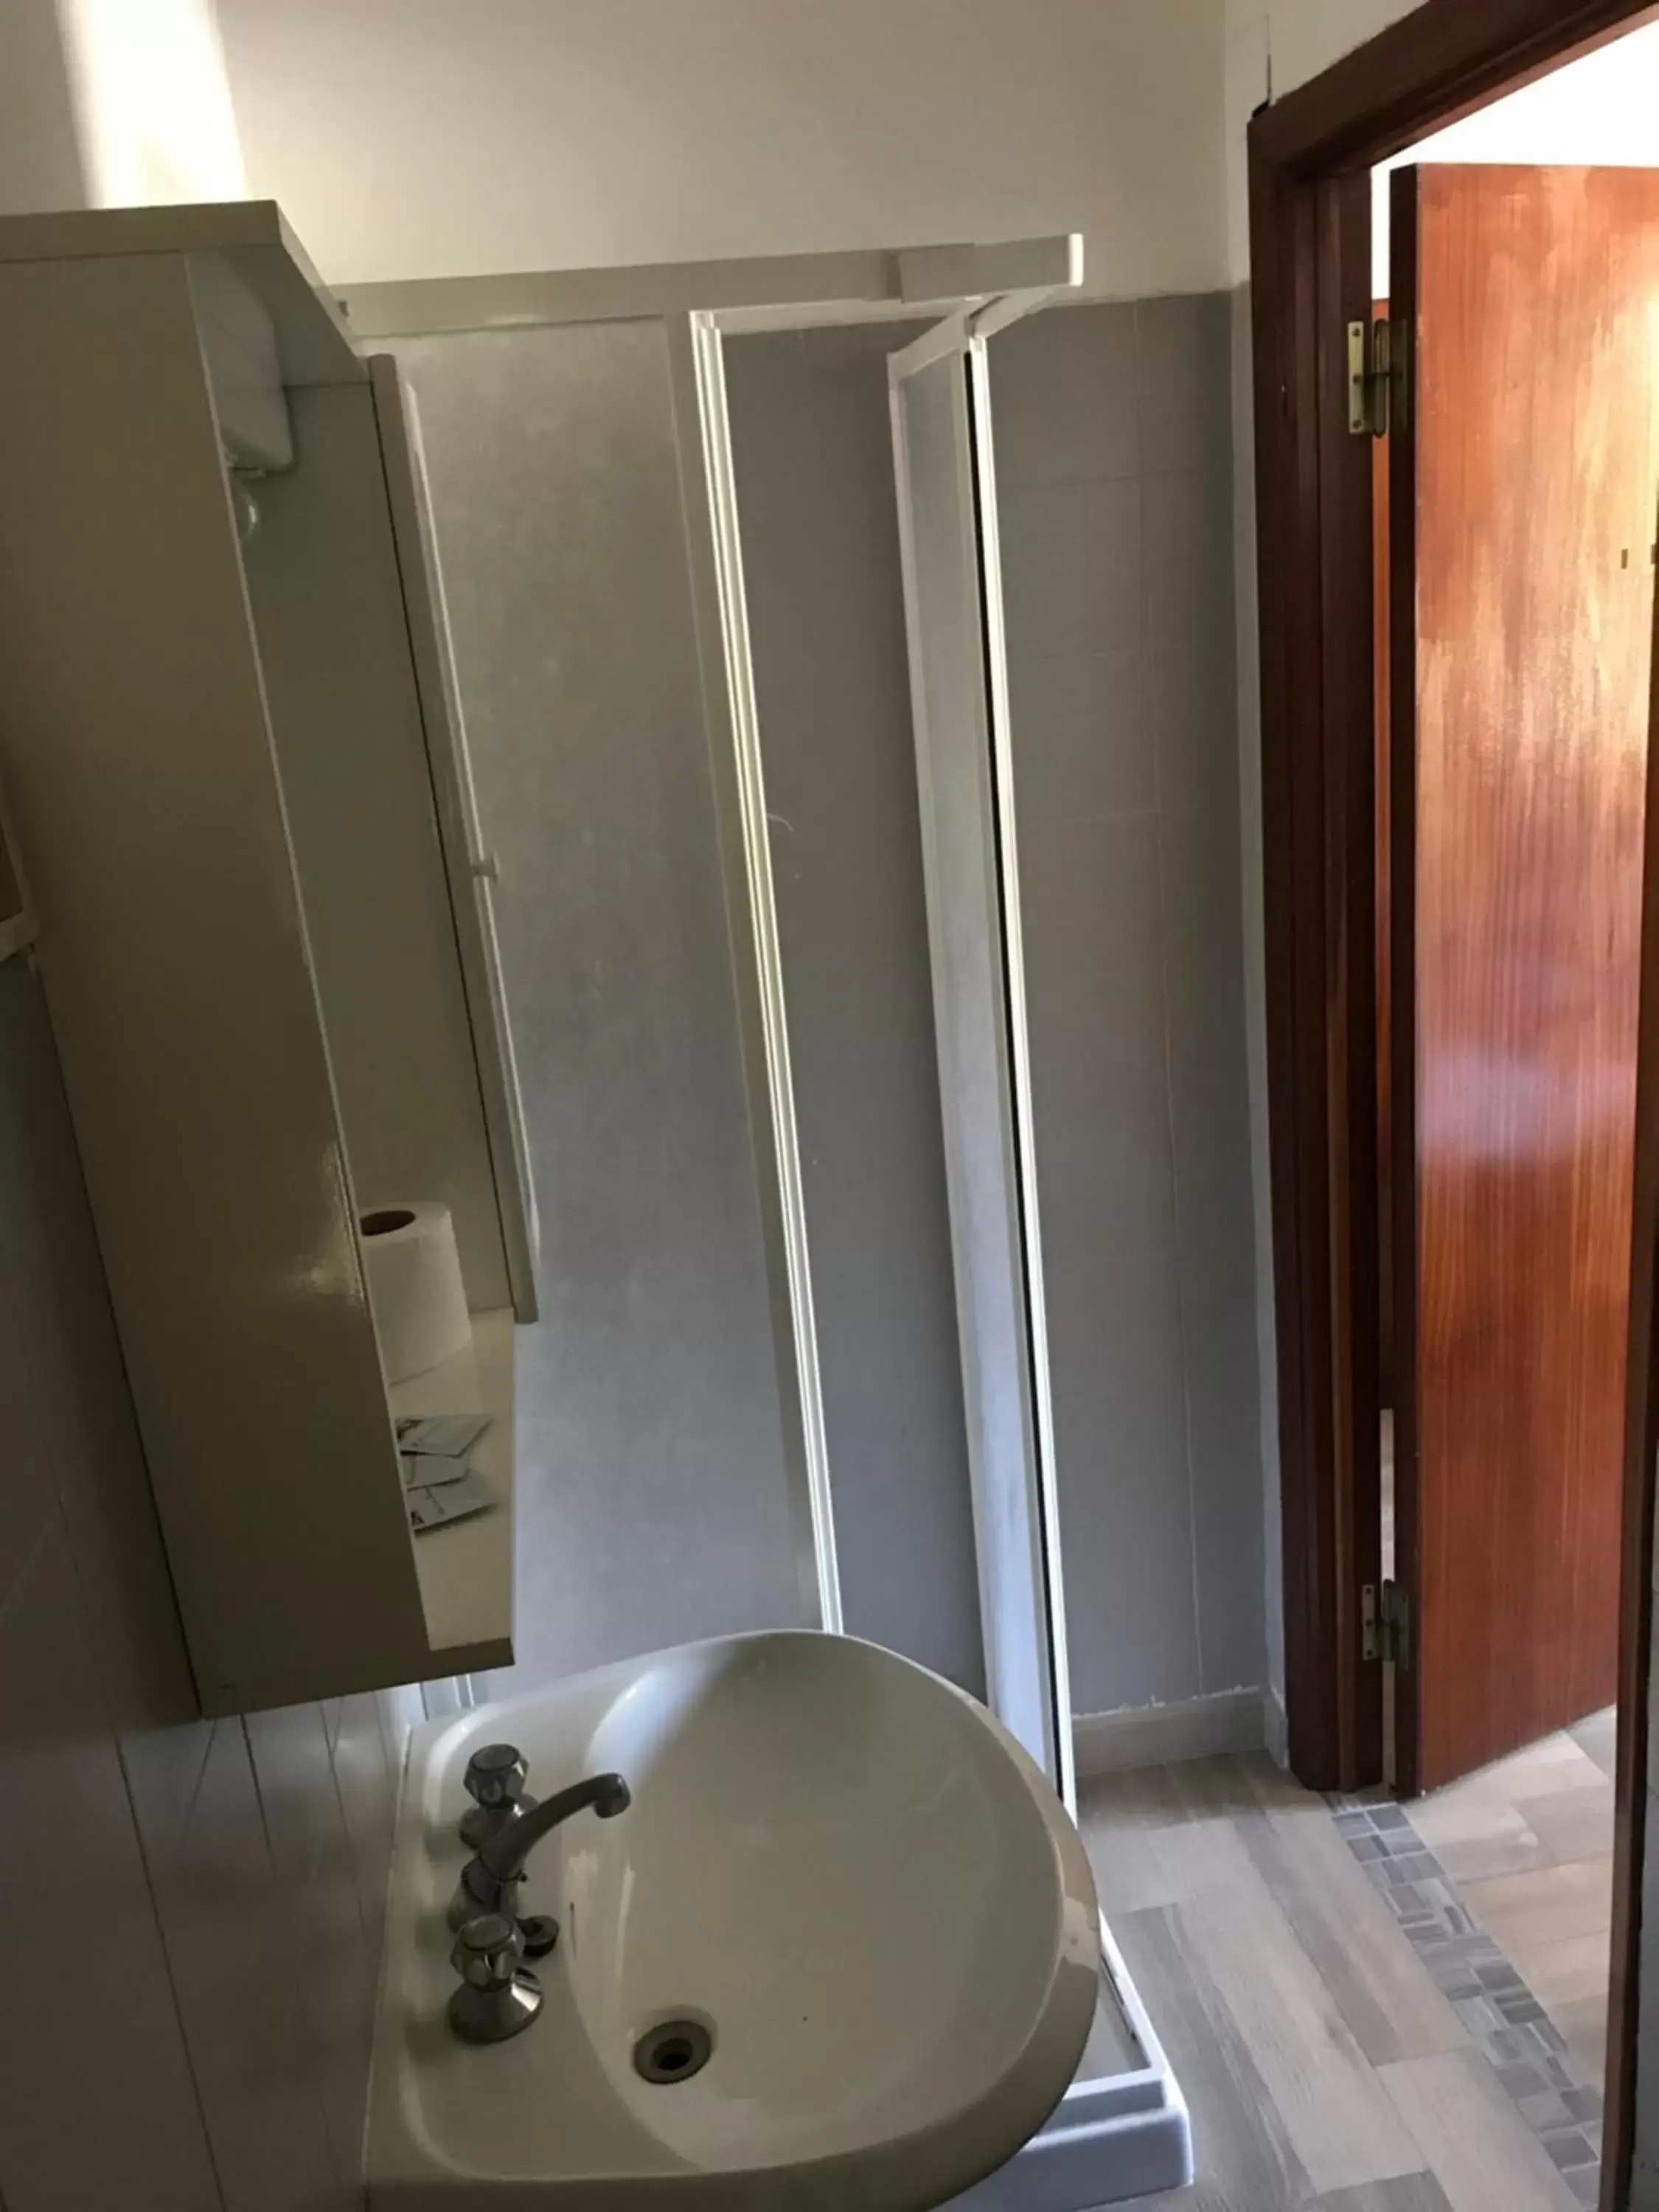 Bathroom in Hotel Mirador